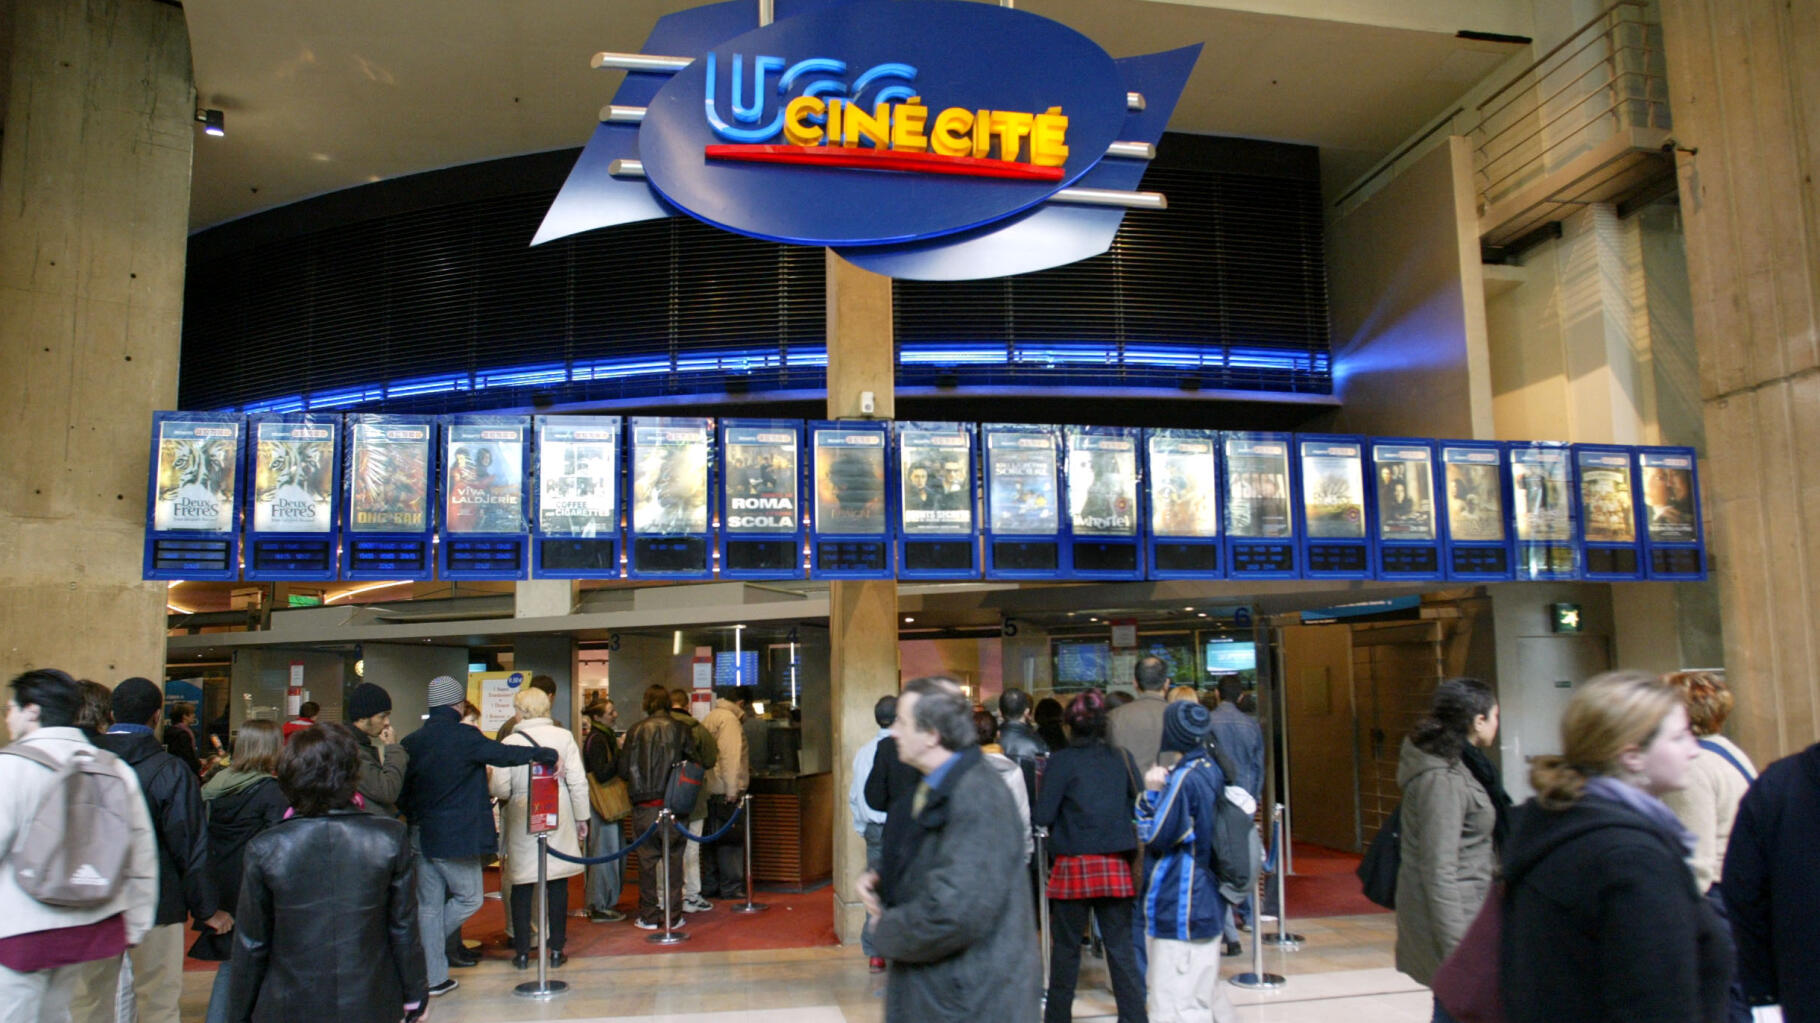 LUGC Ciné Cité des Halles cinéma le plus fréquenté au monde